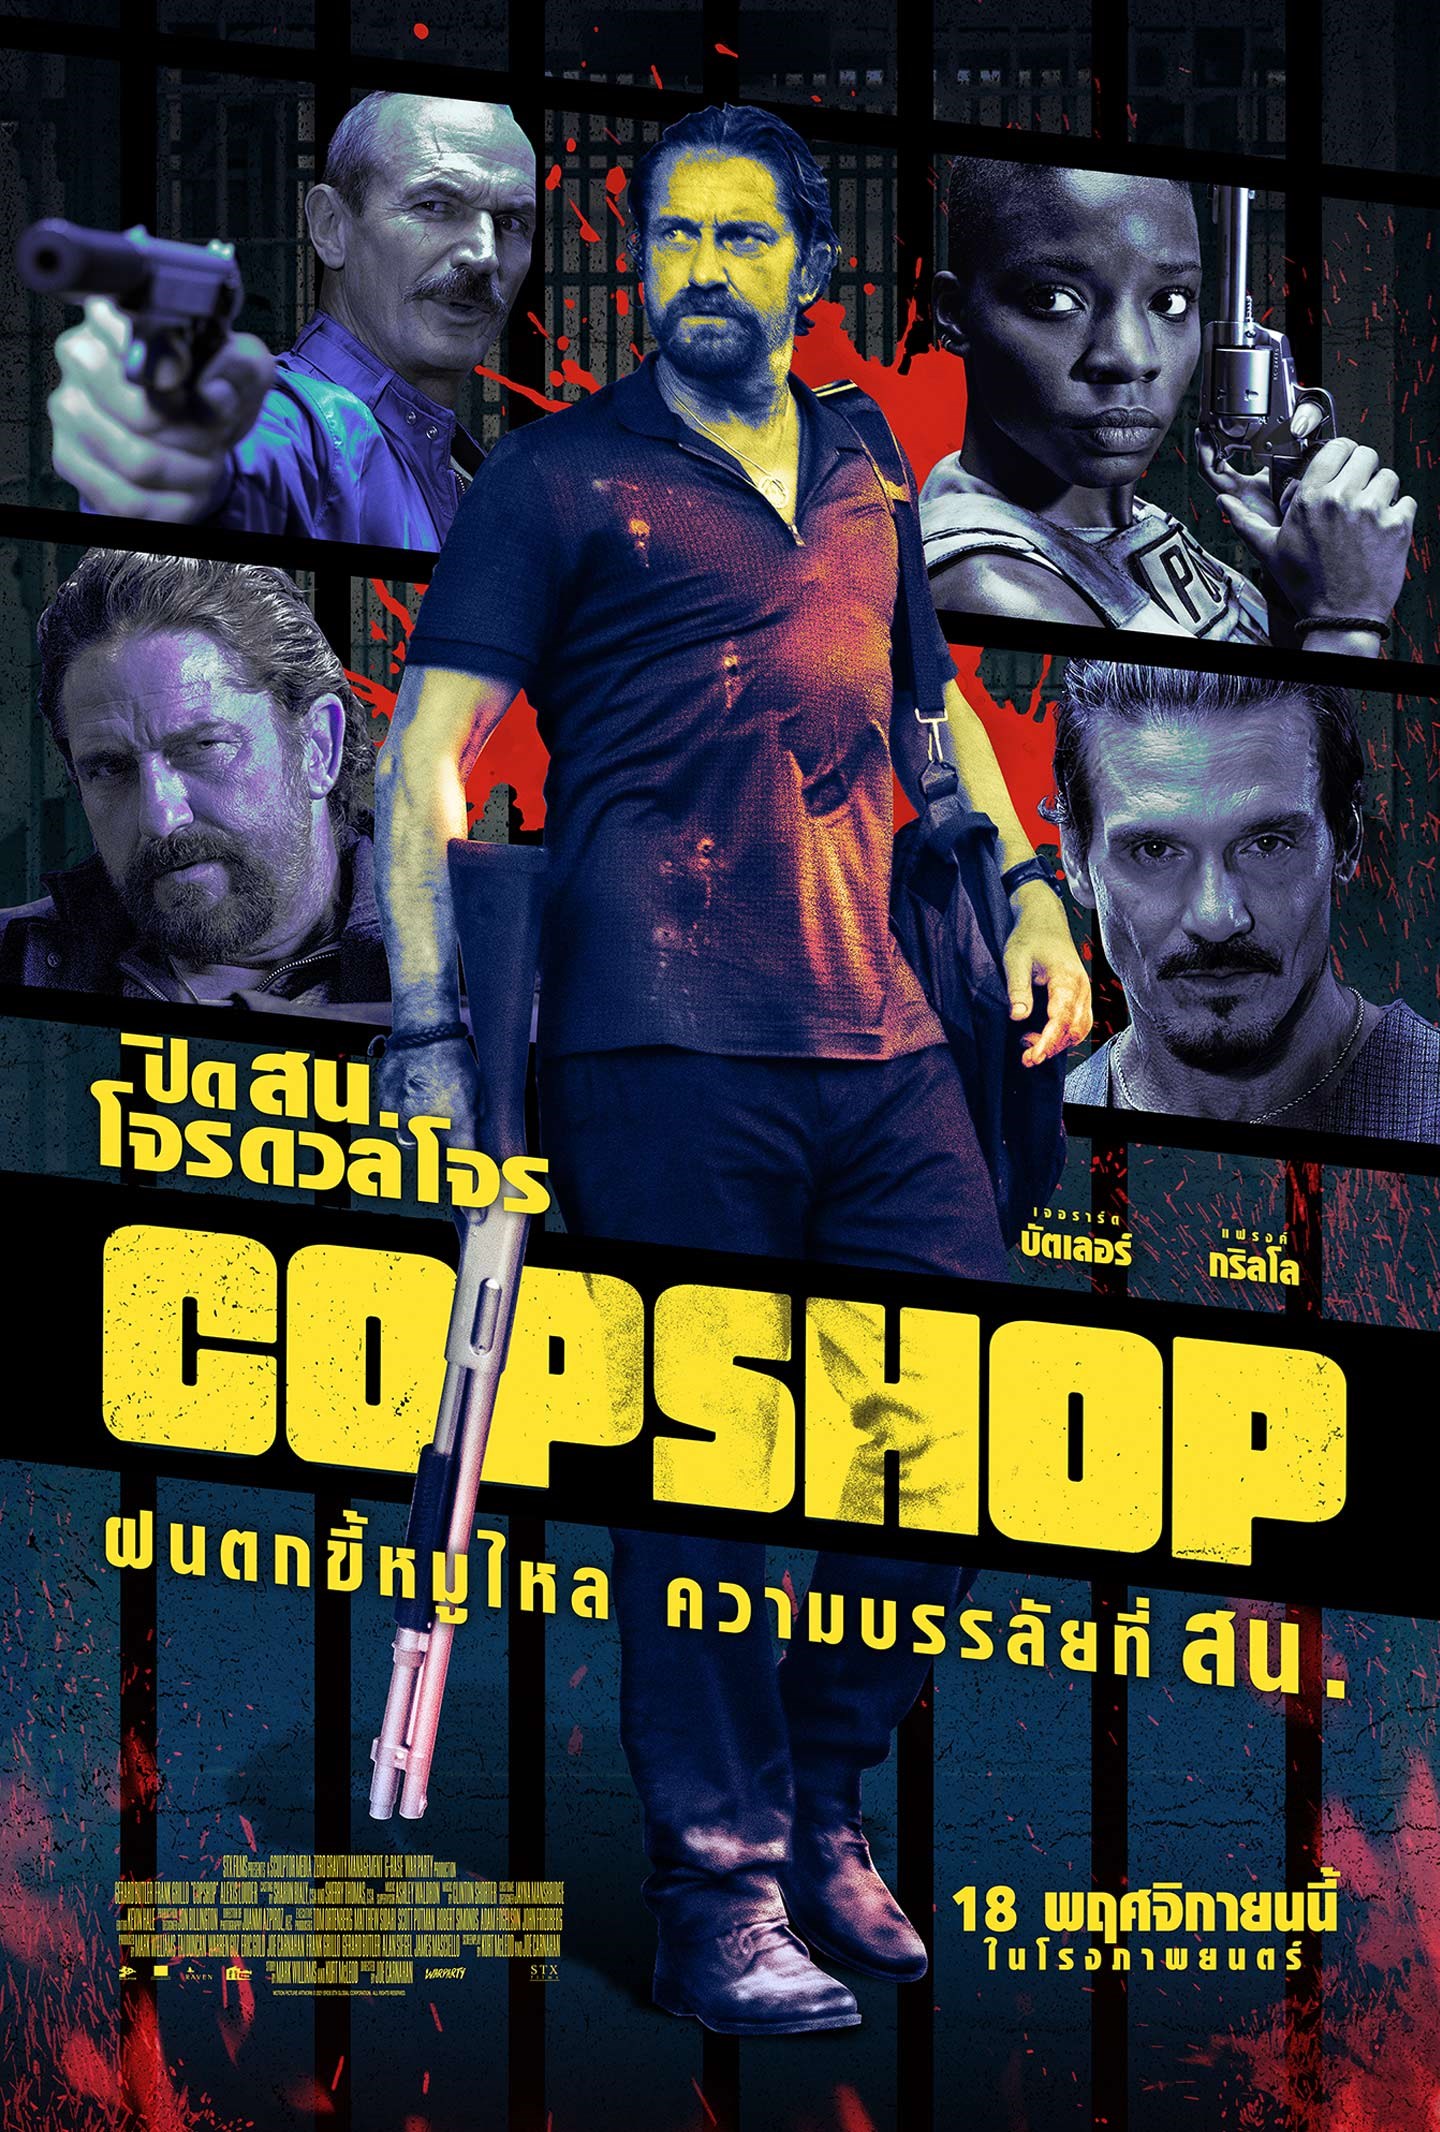 ดูหนังออนไลน์ฟรี Copshop ปิด สน. โจรดวลโจร 2021 พากย์ไทย